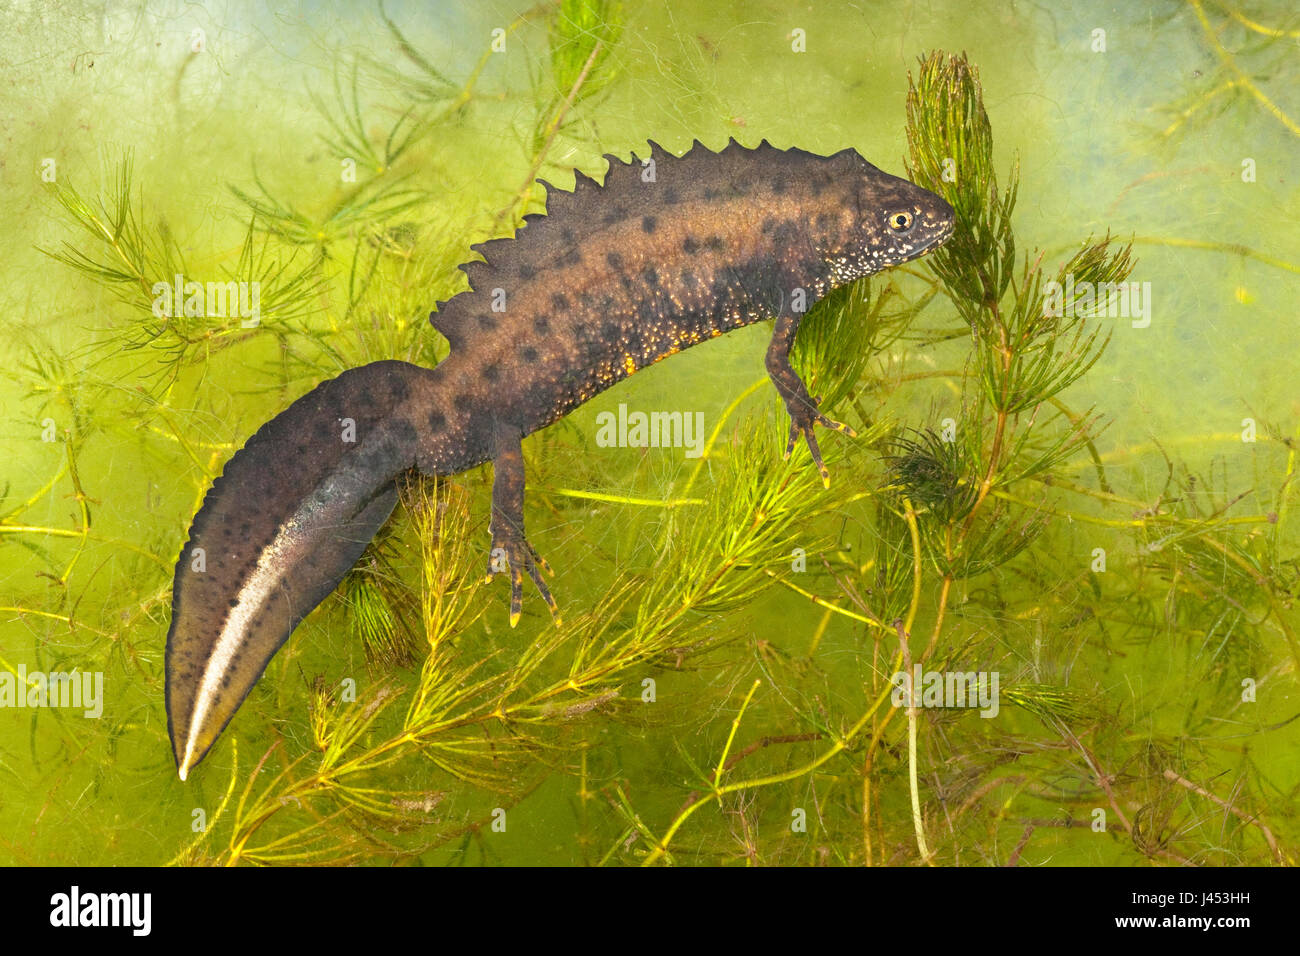 Foto de un macho somormujo newt bajo el agua colgando de las plantas de agua verde. Foto de stock